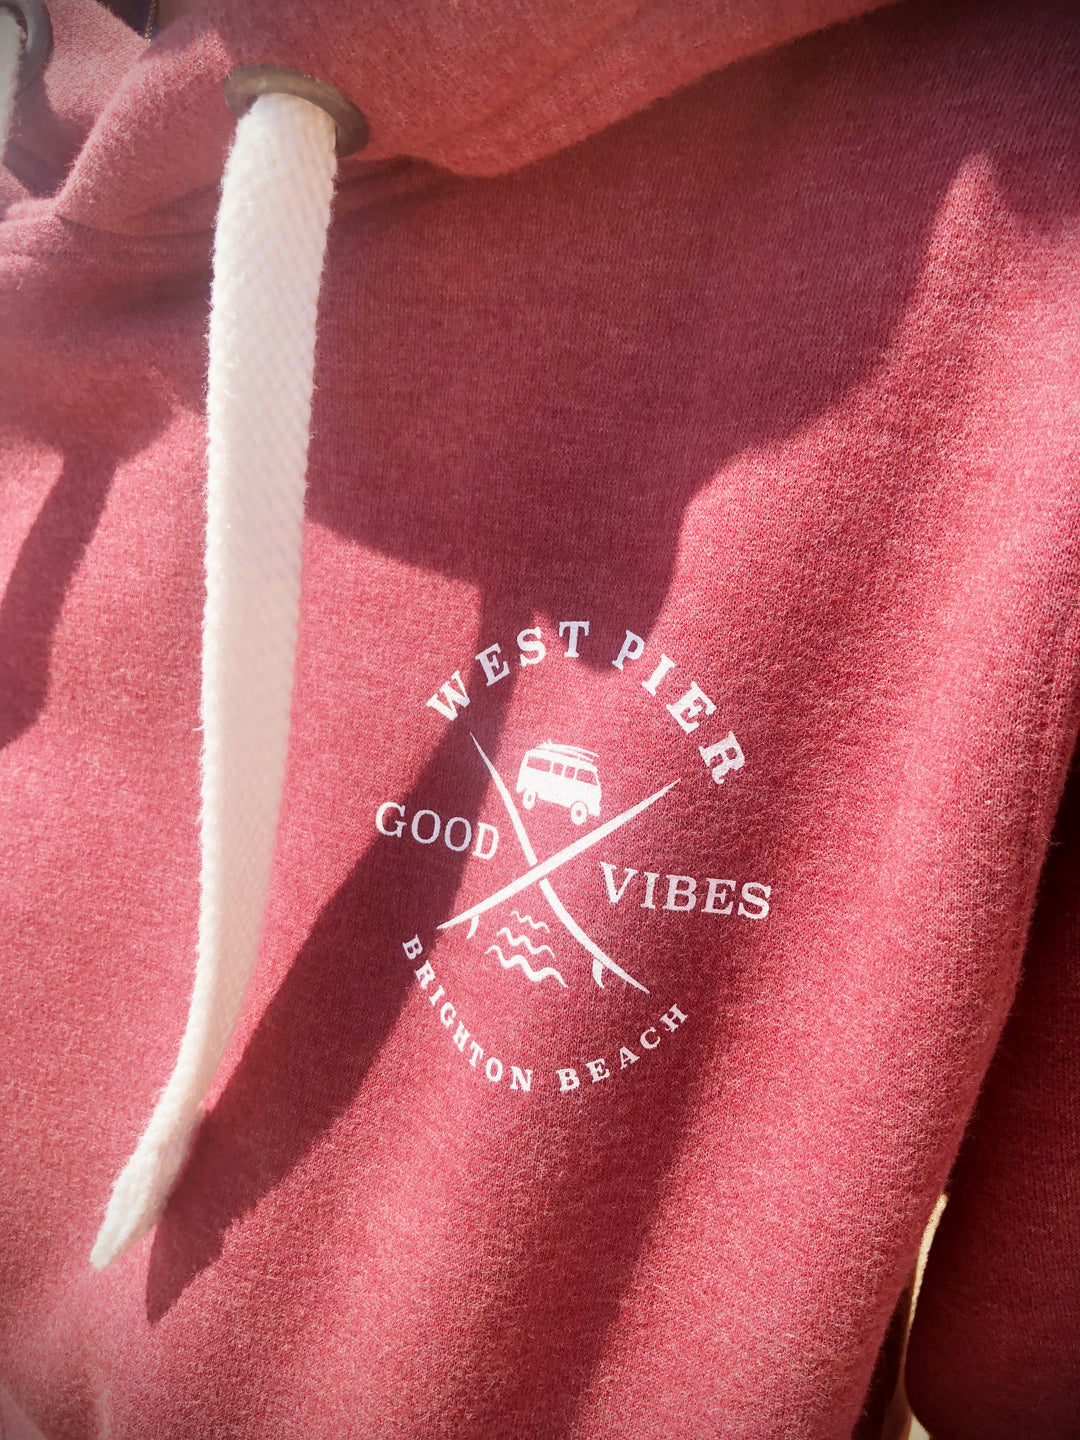 West Pier Hoodie - 'West Pier - Good Vibes - Brighton Beach' Camper Van Logo - Red